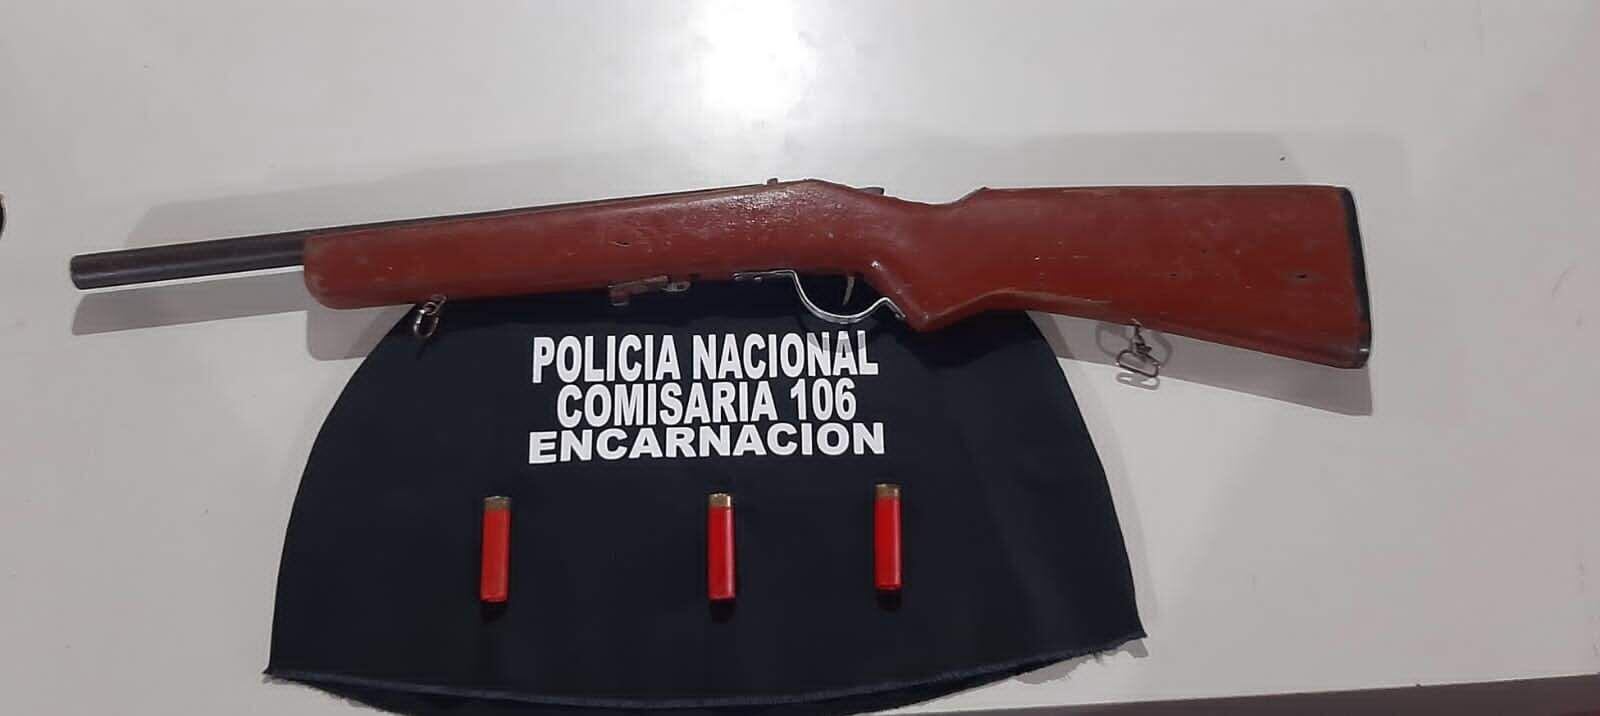 
Escopeta hallada en Encarnación.